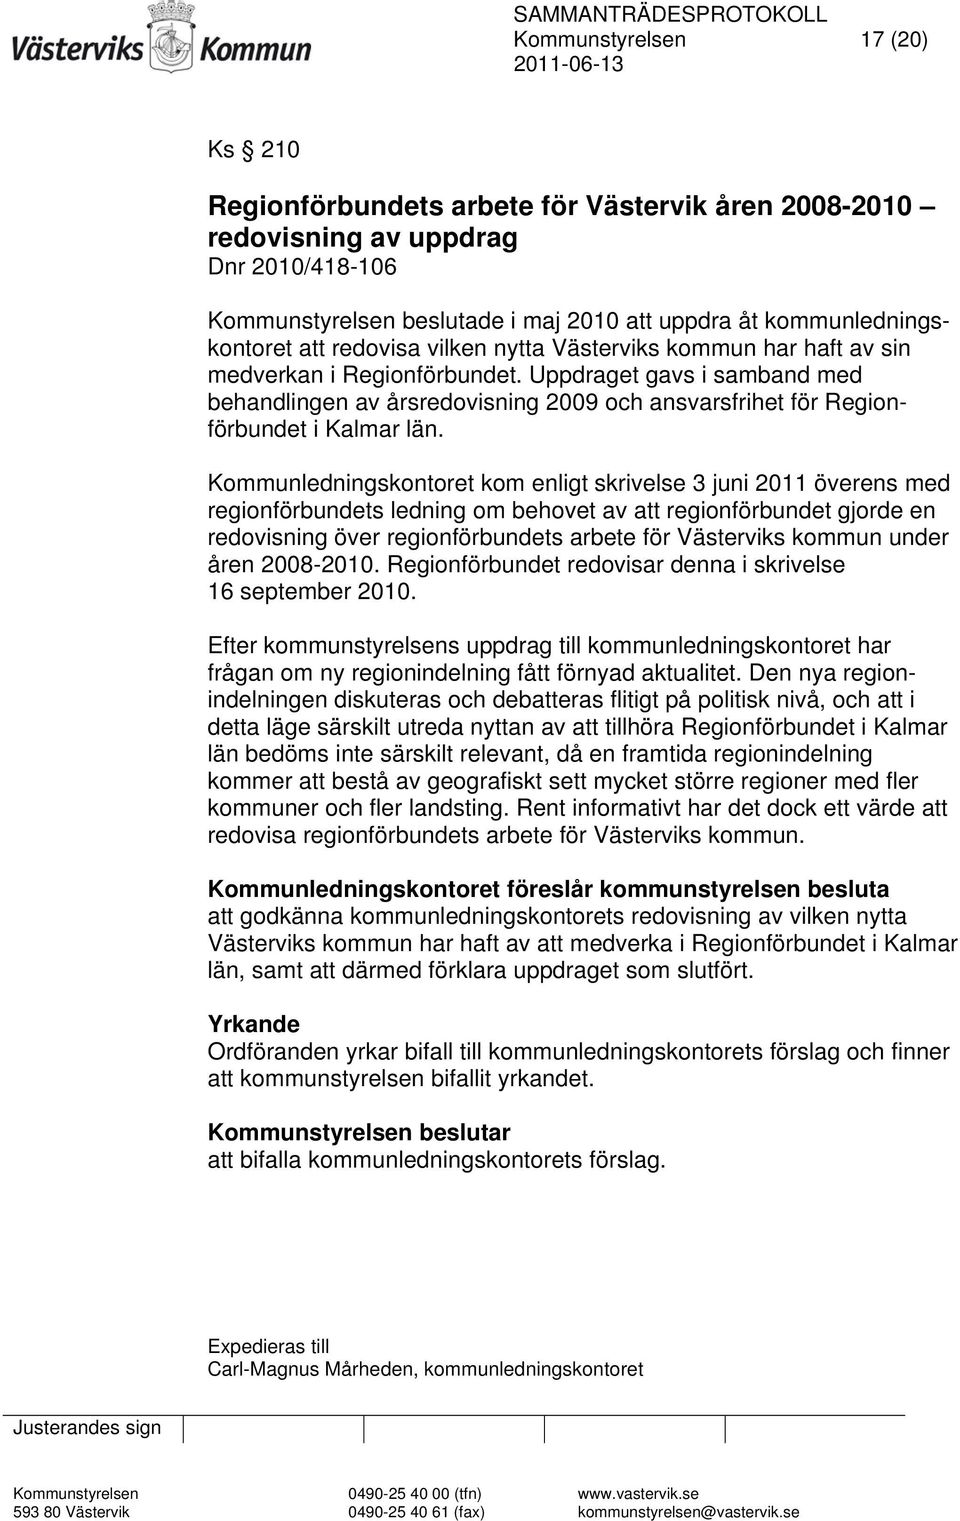 Uppdraget gavs i samband med behandlingen av årsredovisning 2009 och ansvarsfrihet för Regionförbundet i Kalmar län.